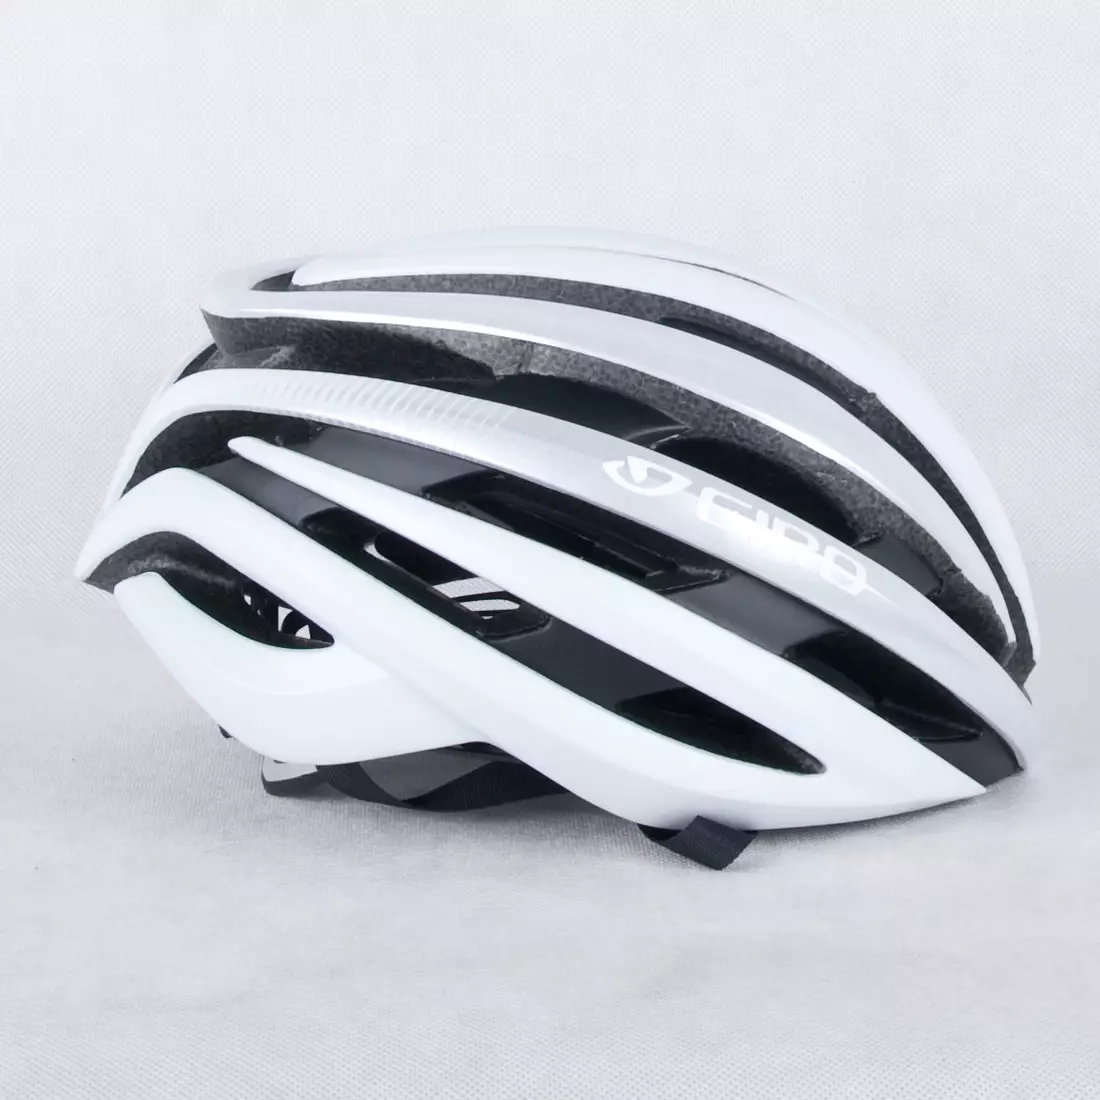 GIRO CINDER MIPS - matná bílá cyklistická přilba